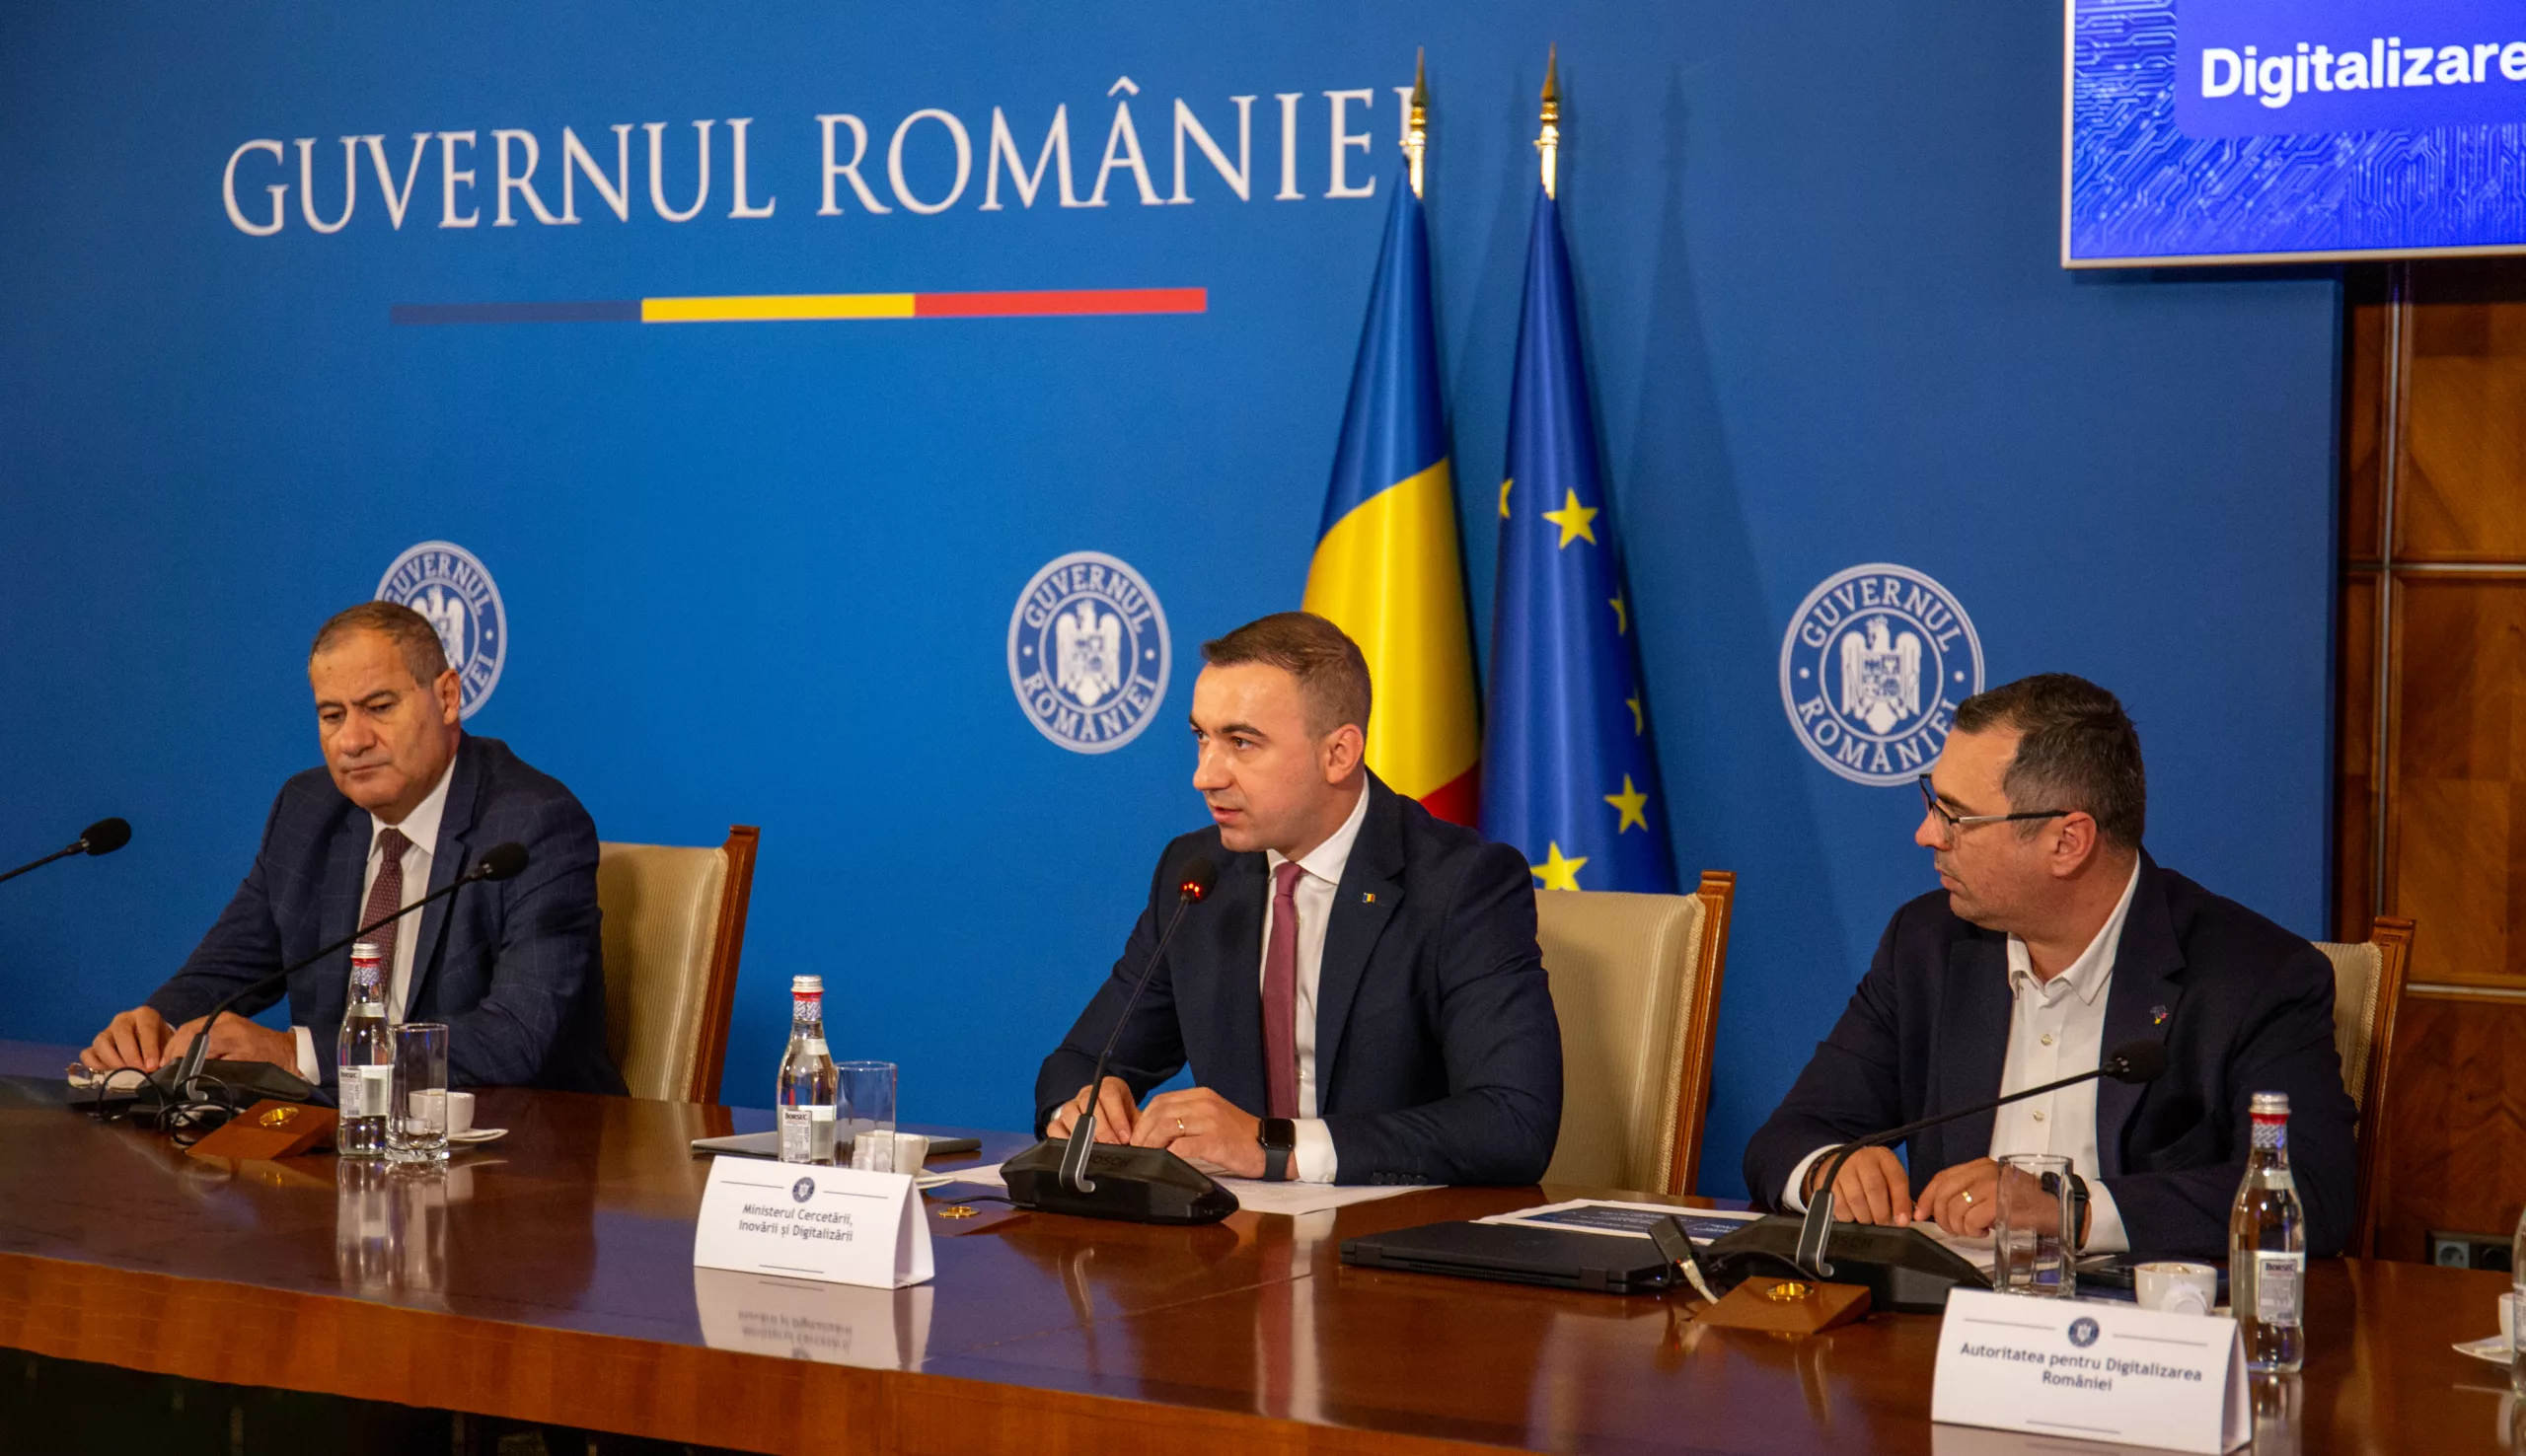 Prim-ministrul Marcel Ciolacu: Până la sfârșitul lunii octombrie, solicit ministerelor să prezinte proiectele de dezvoltare a serviciilor publice digitale care intră la finanțare